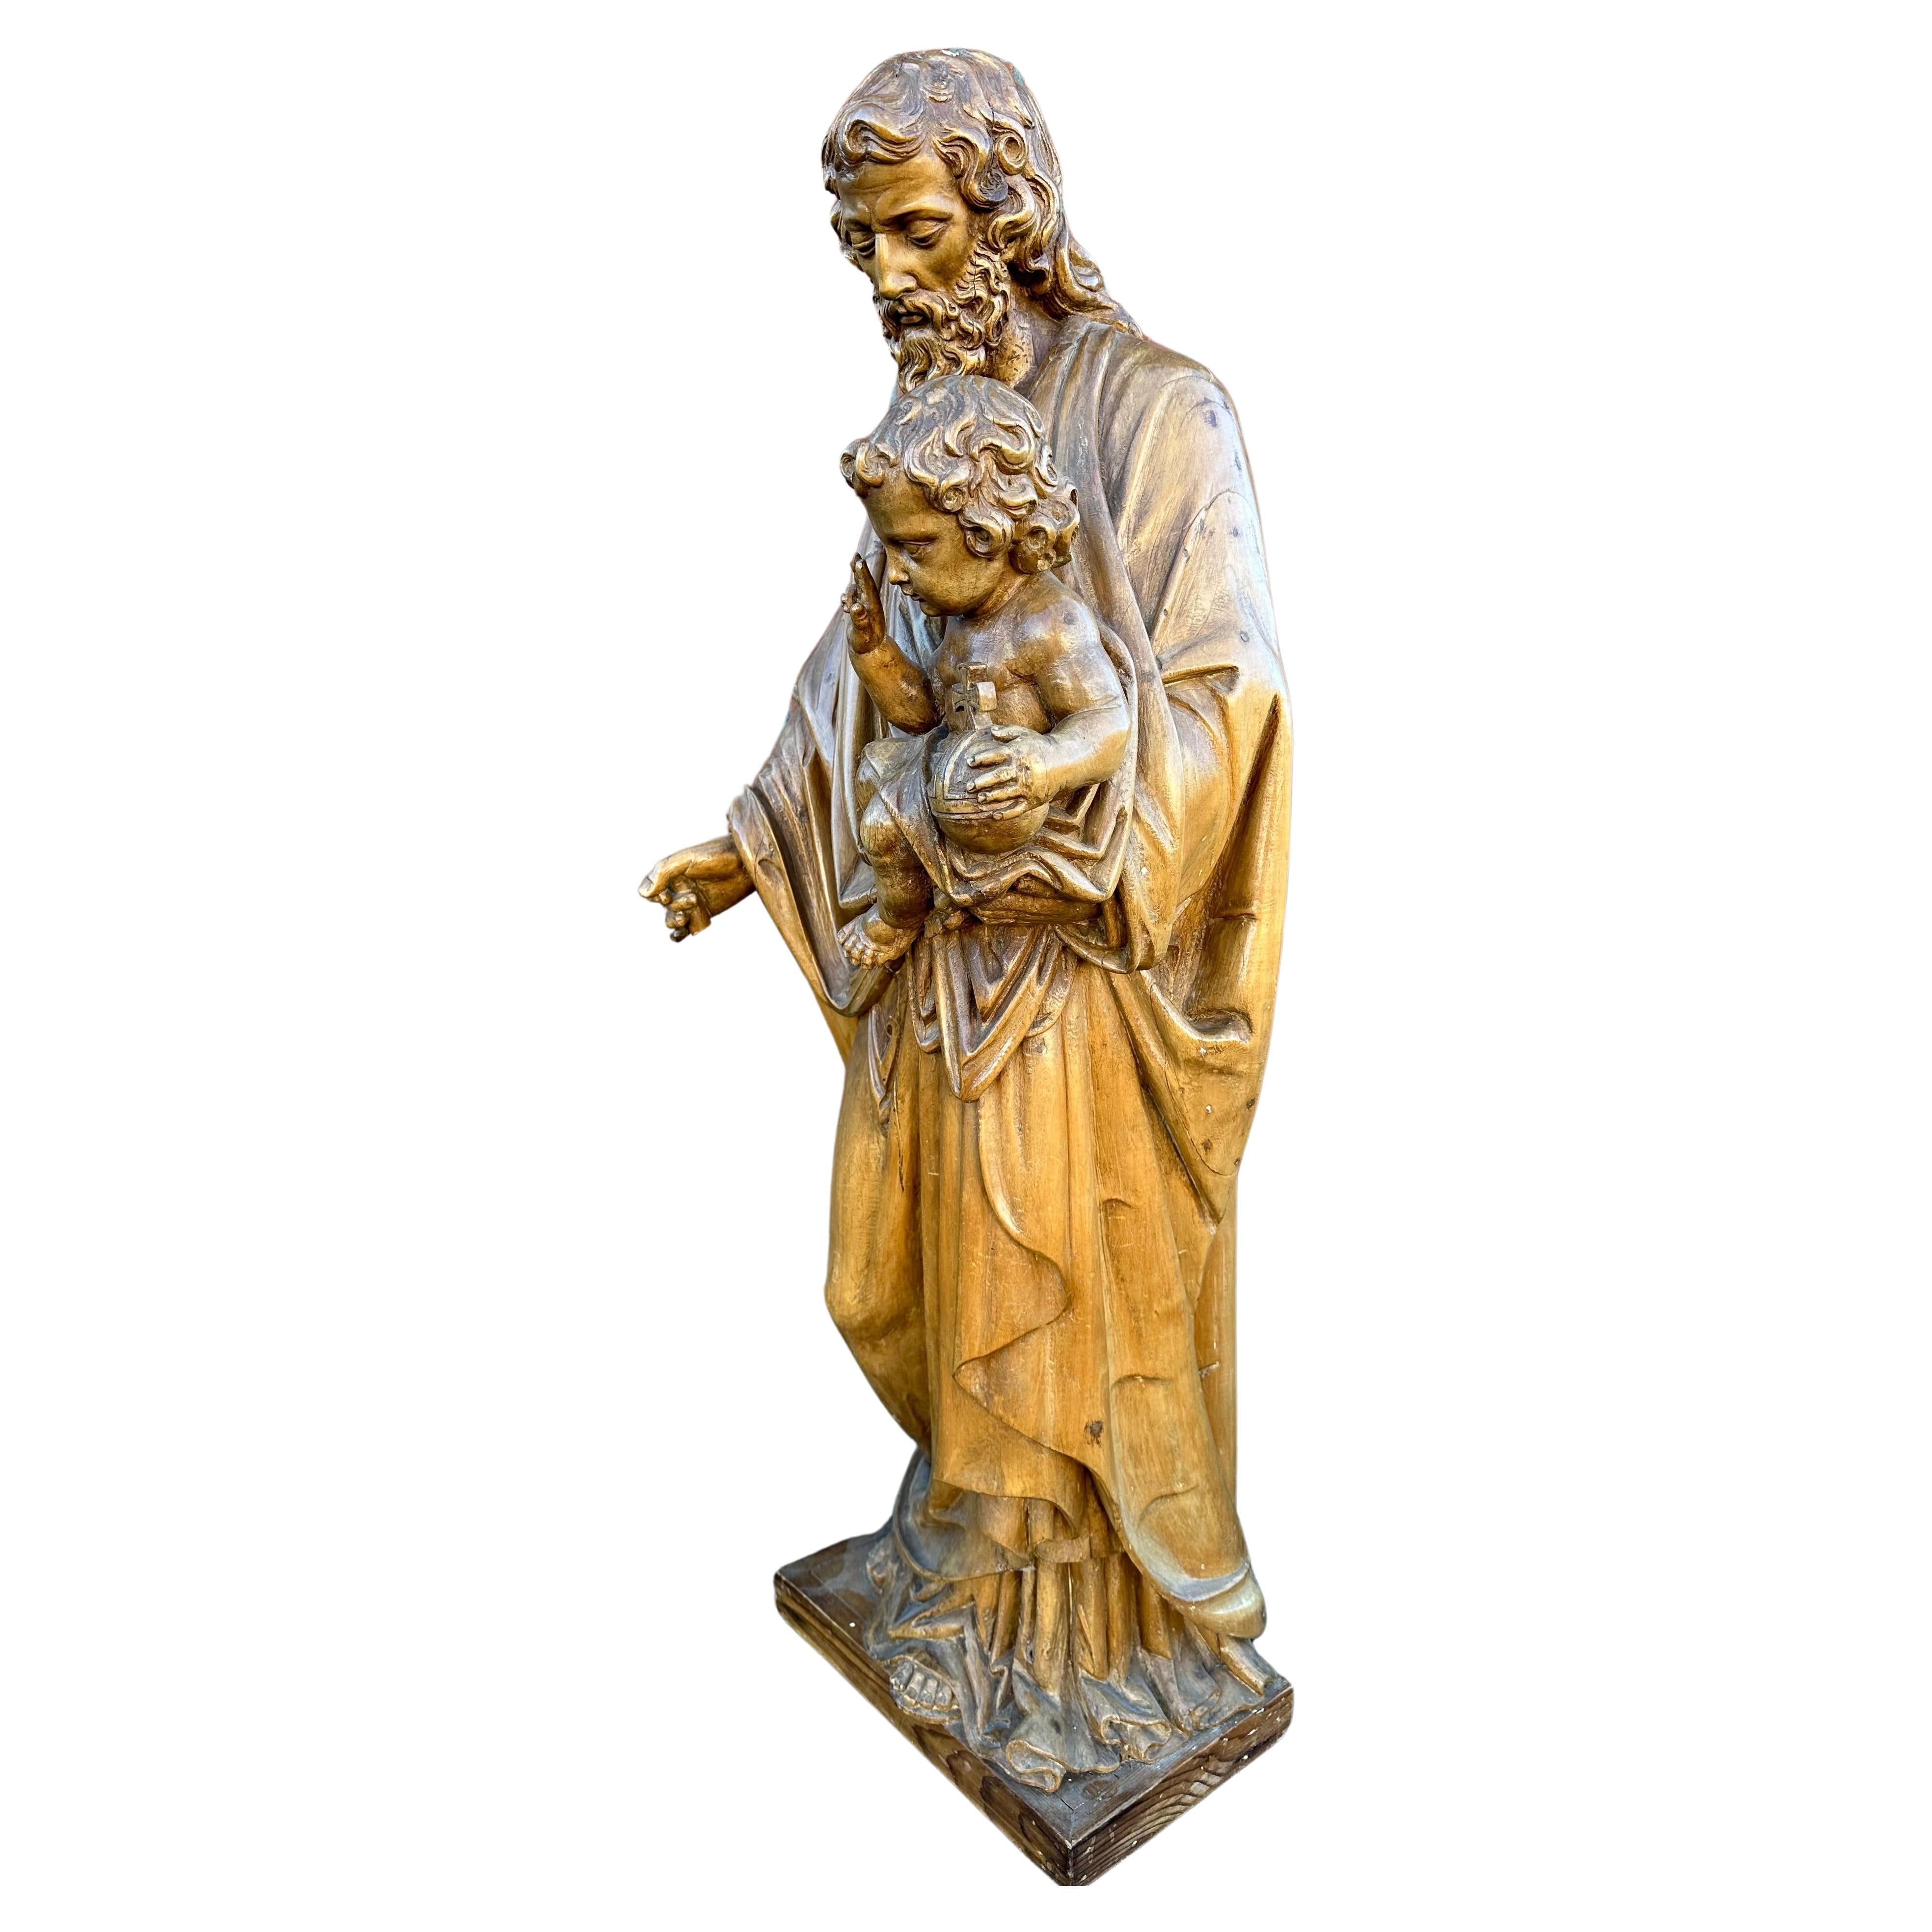 Große und hochwertige geschnitzte antike Skulptur von Joseph, der das Jesuskind hält.

Wenn Sie auf der Suche nach einem preiswerten religiösen Kunstwerk sind, dann könnte diese qualitätsvoll geschnitzte Kirchenreliquie schon bald Ihr Haus, Kloster